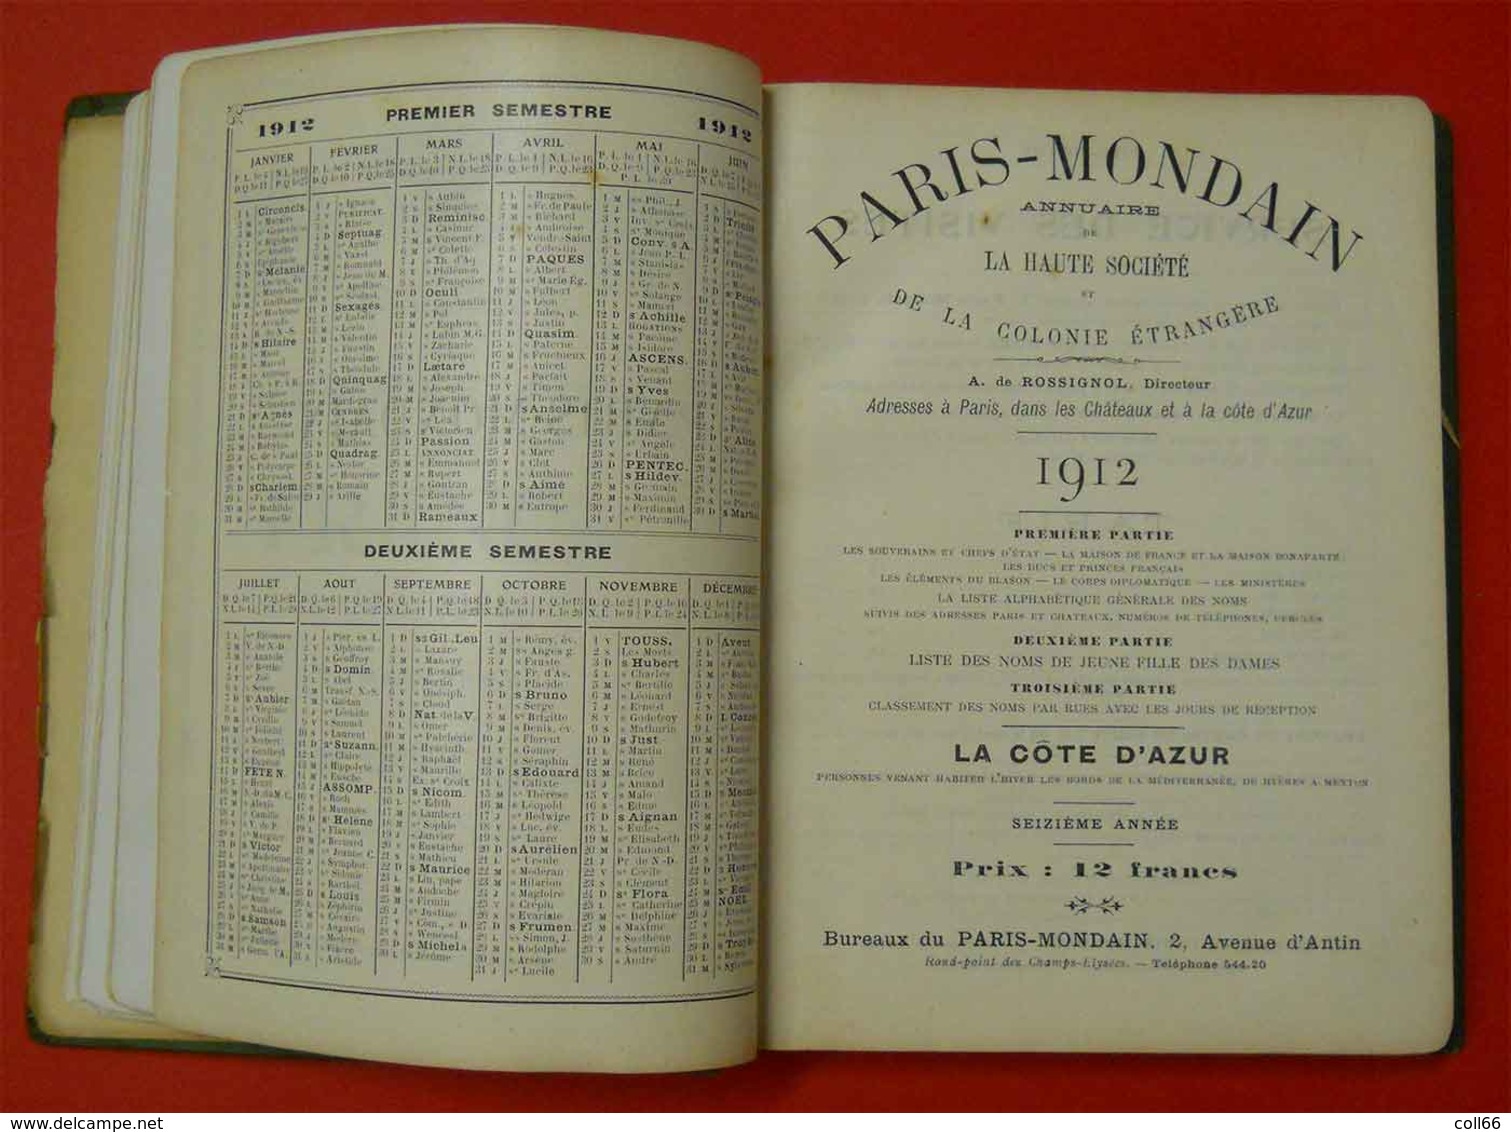 Book 1912 Livre Paris Mondain Et Côte D'Azur Bible Des Grands Noms Imprimerie Paul Dupont Paris 720 Pages 22x16.5x2.5cm - 1901-1940